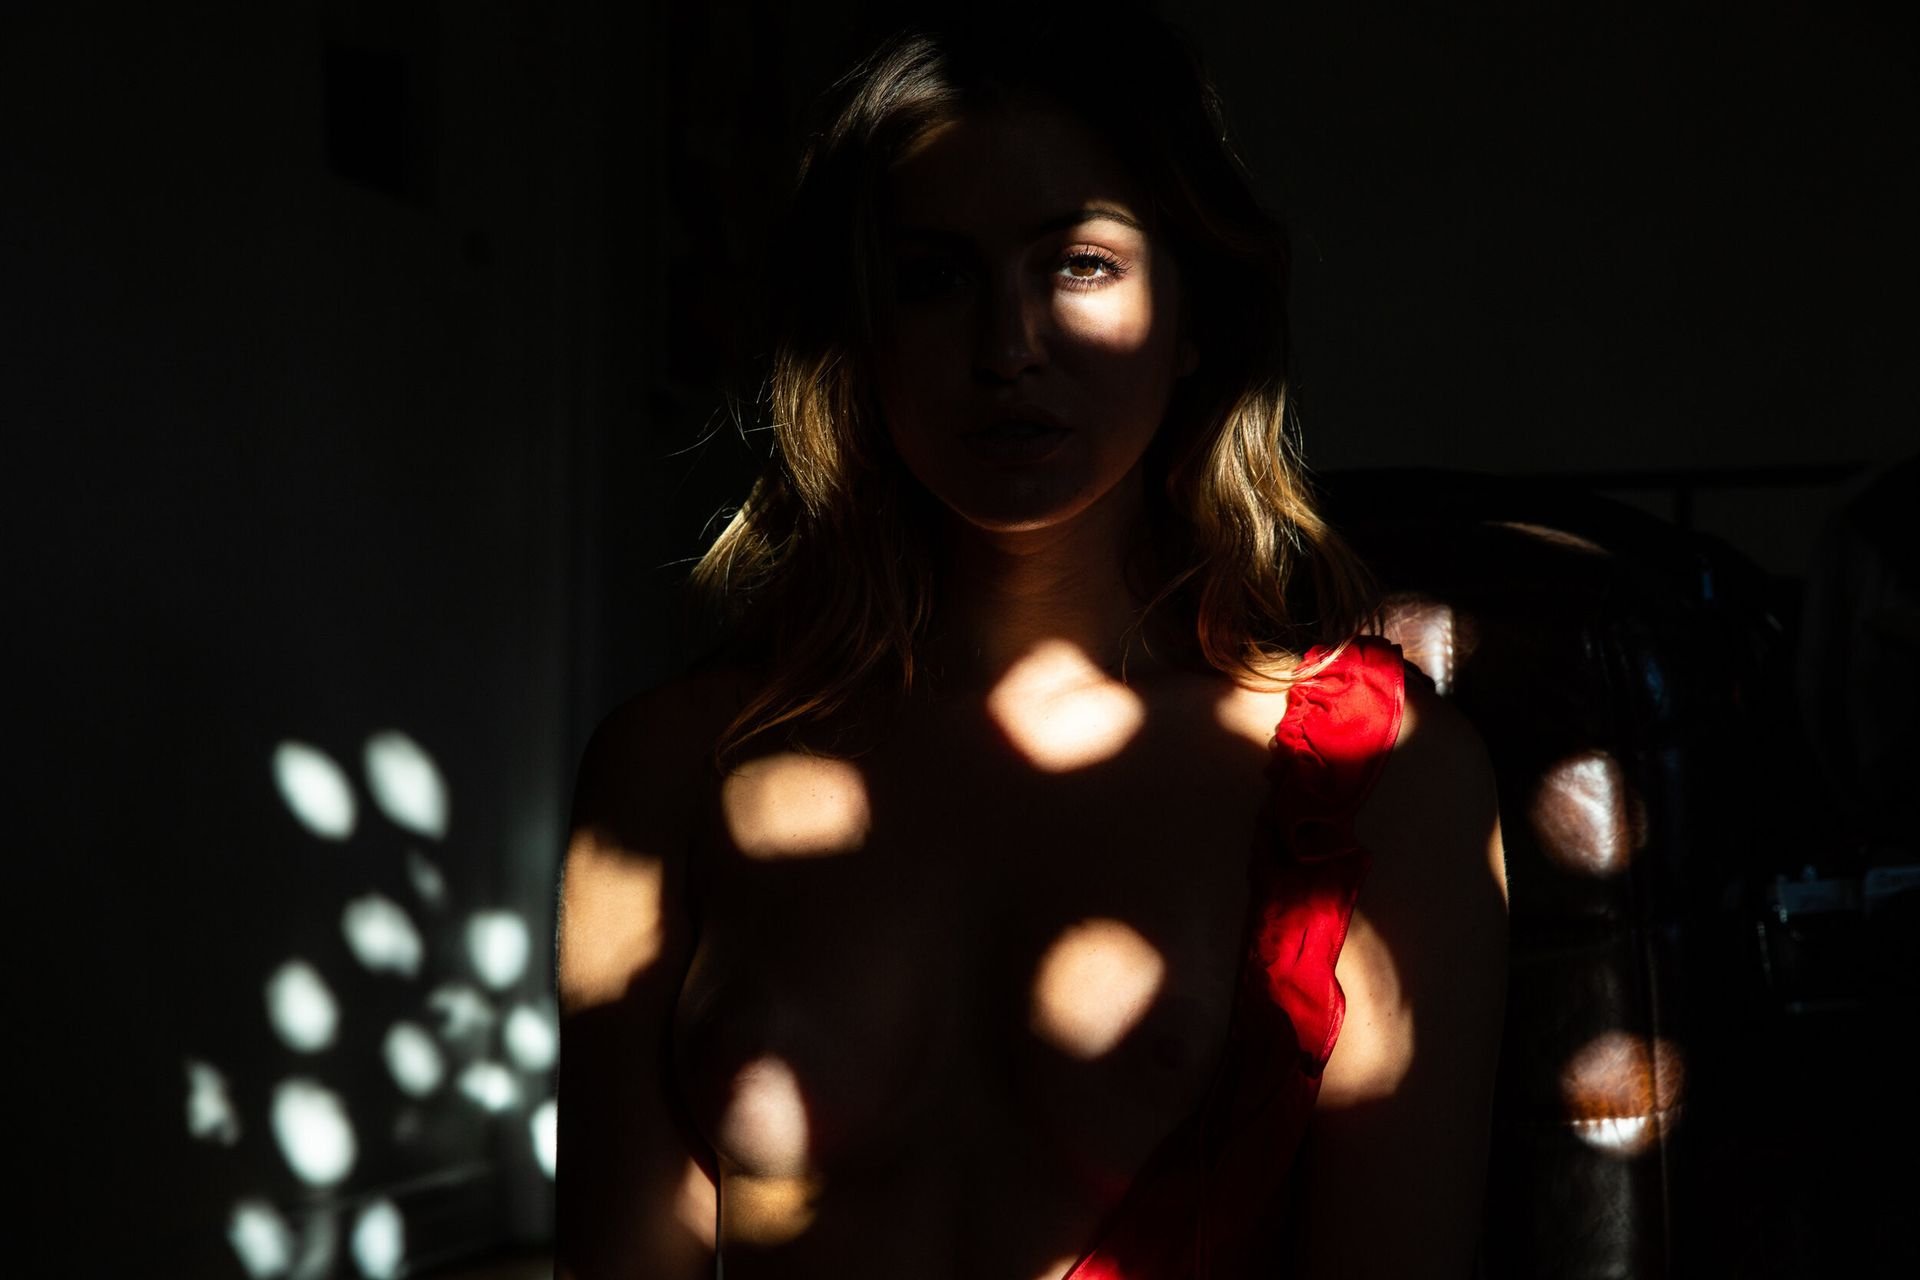 Jehane paris nude and sexy photos by neave bozorgi